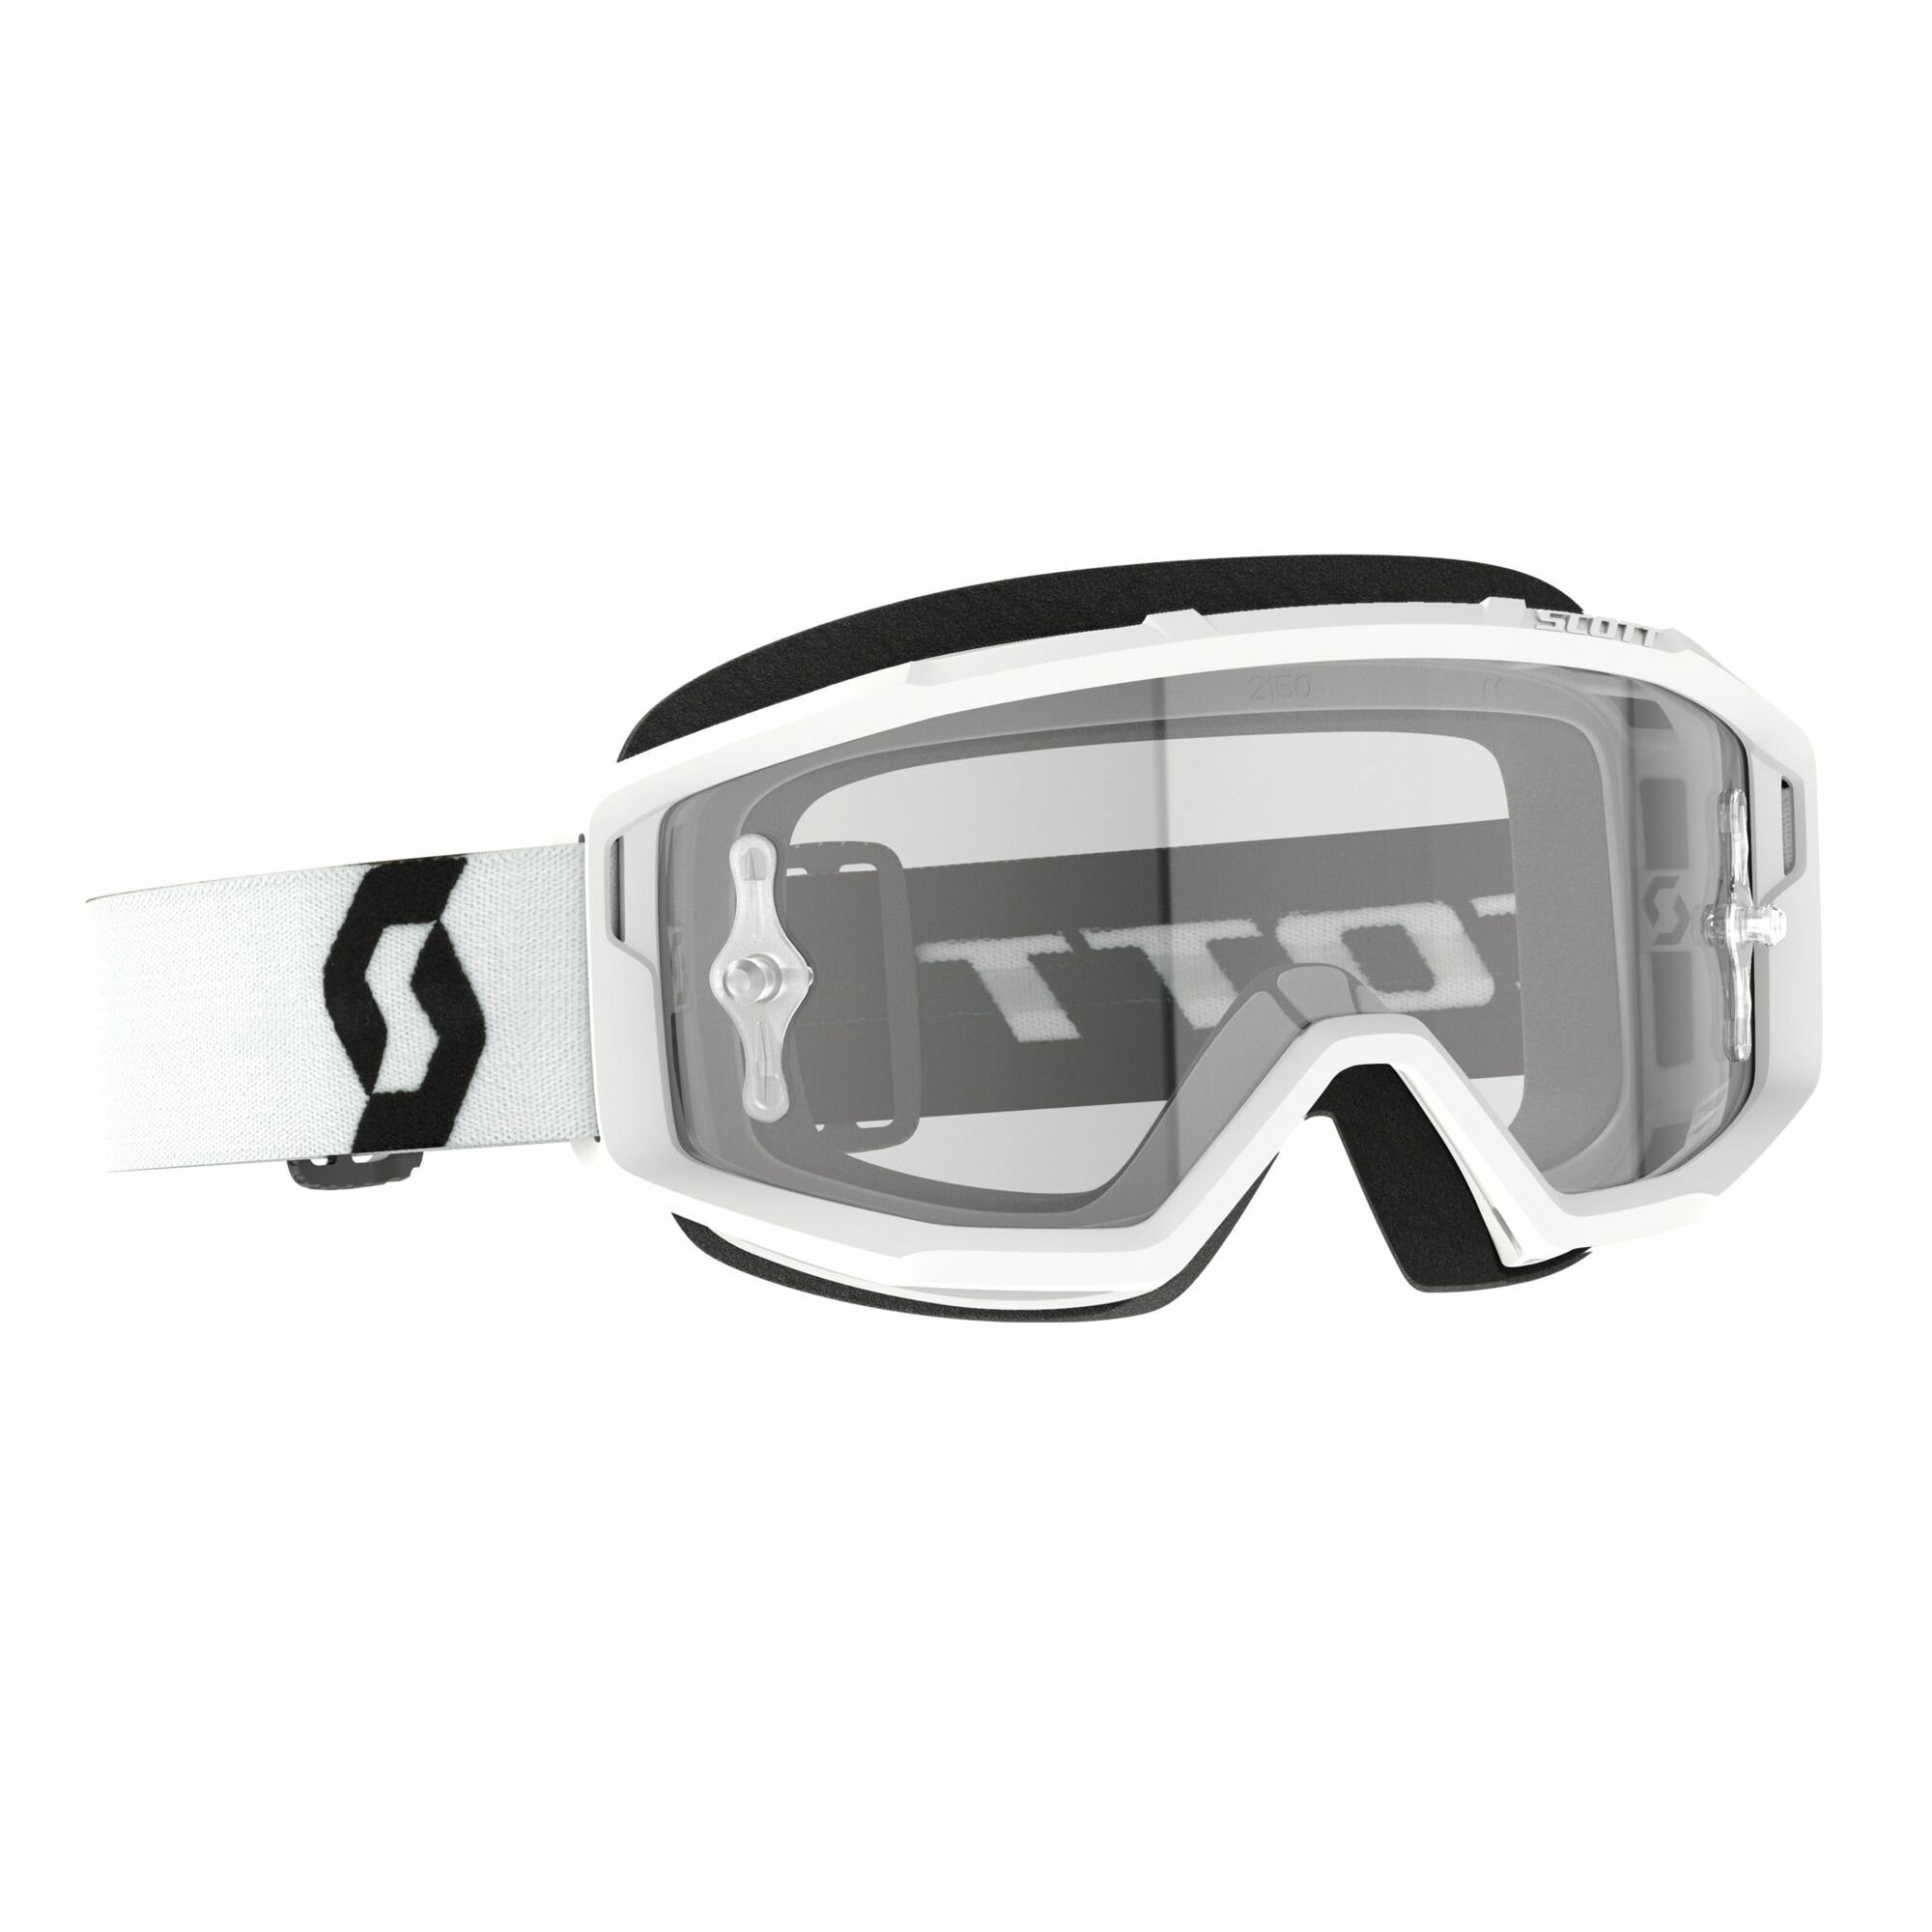 Кроссовые очки маска Scott Primal для мотокросса/эндуро/ очки для экстремальных видов спорта